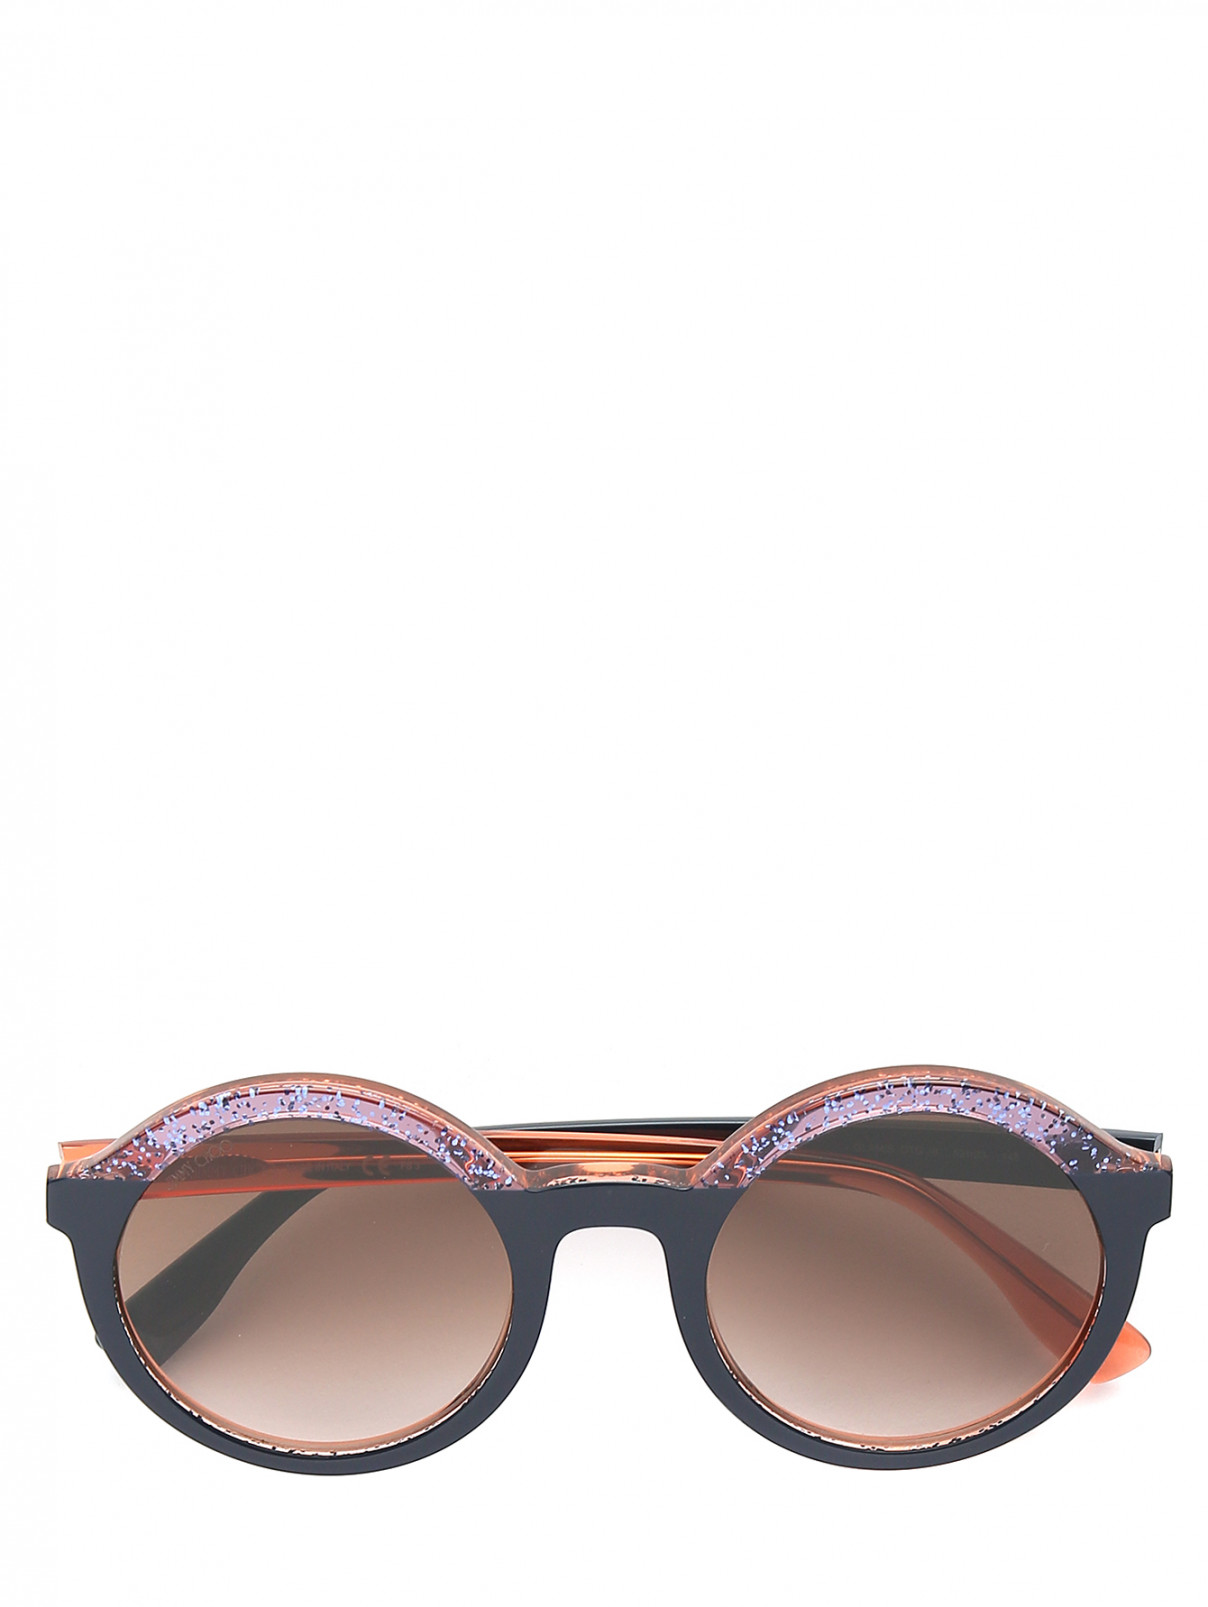 Солнцезащитные очки в оправе из пластика декорированные блестками Jimmy Choo  –  Общий вид  – Цвет:  Синий